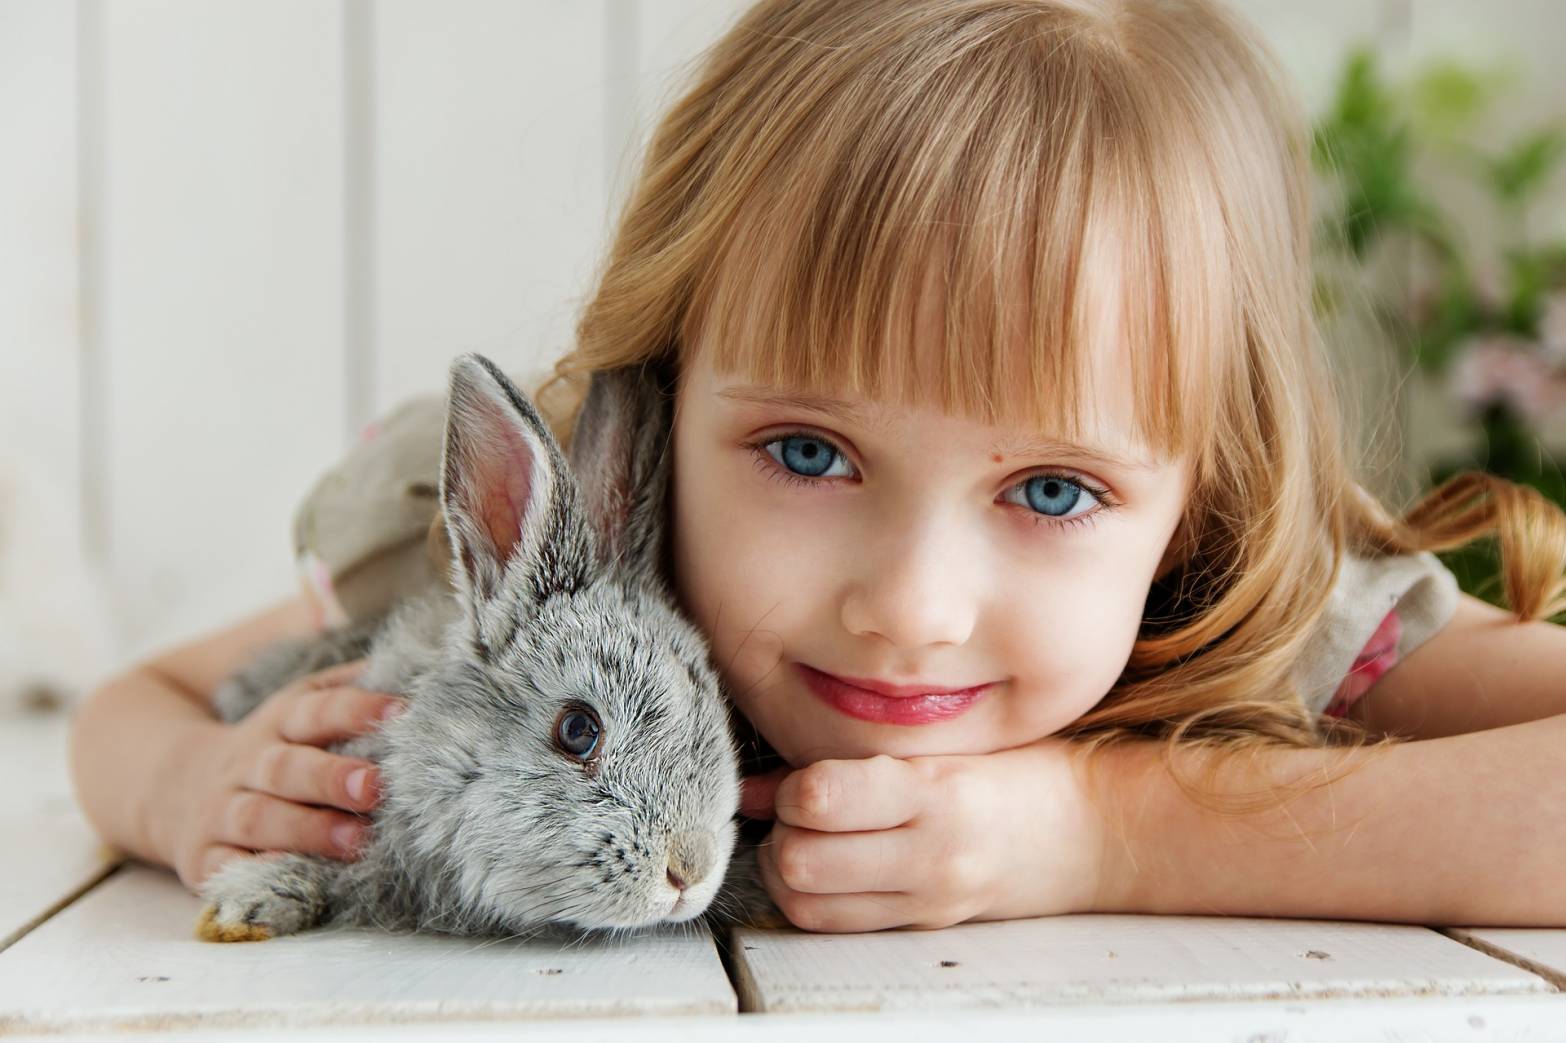 Thỏ là đồng vật nhìn được phía sau mà không cấn quay đầu lại.